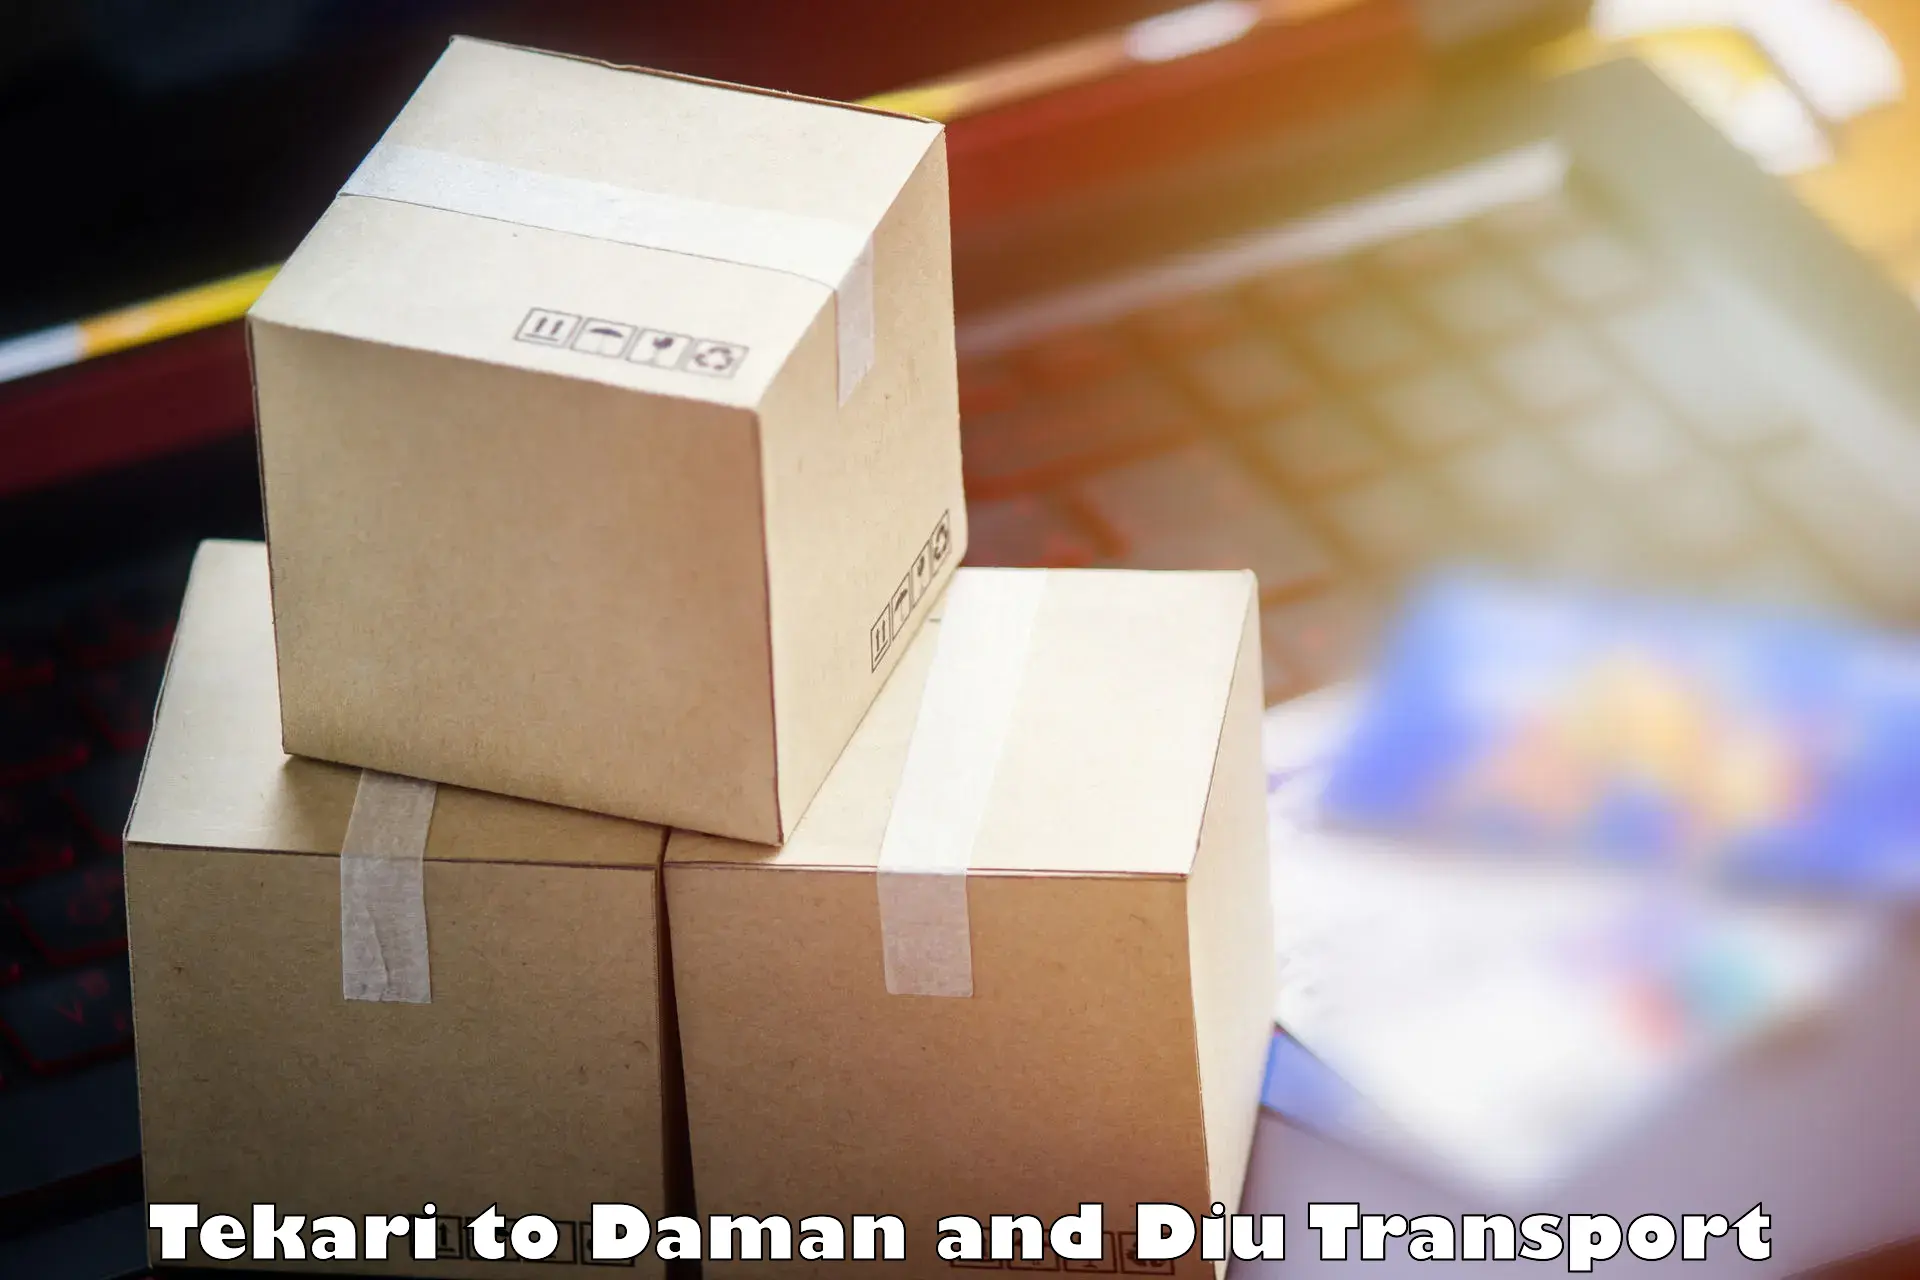 Transport in sharing Tekari to Daman and Diu